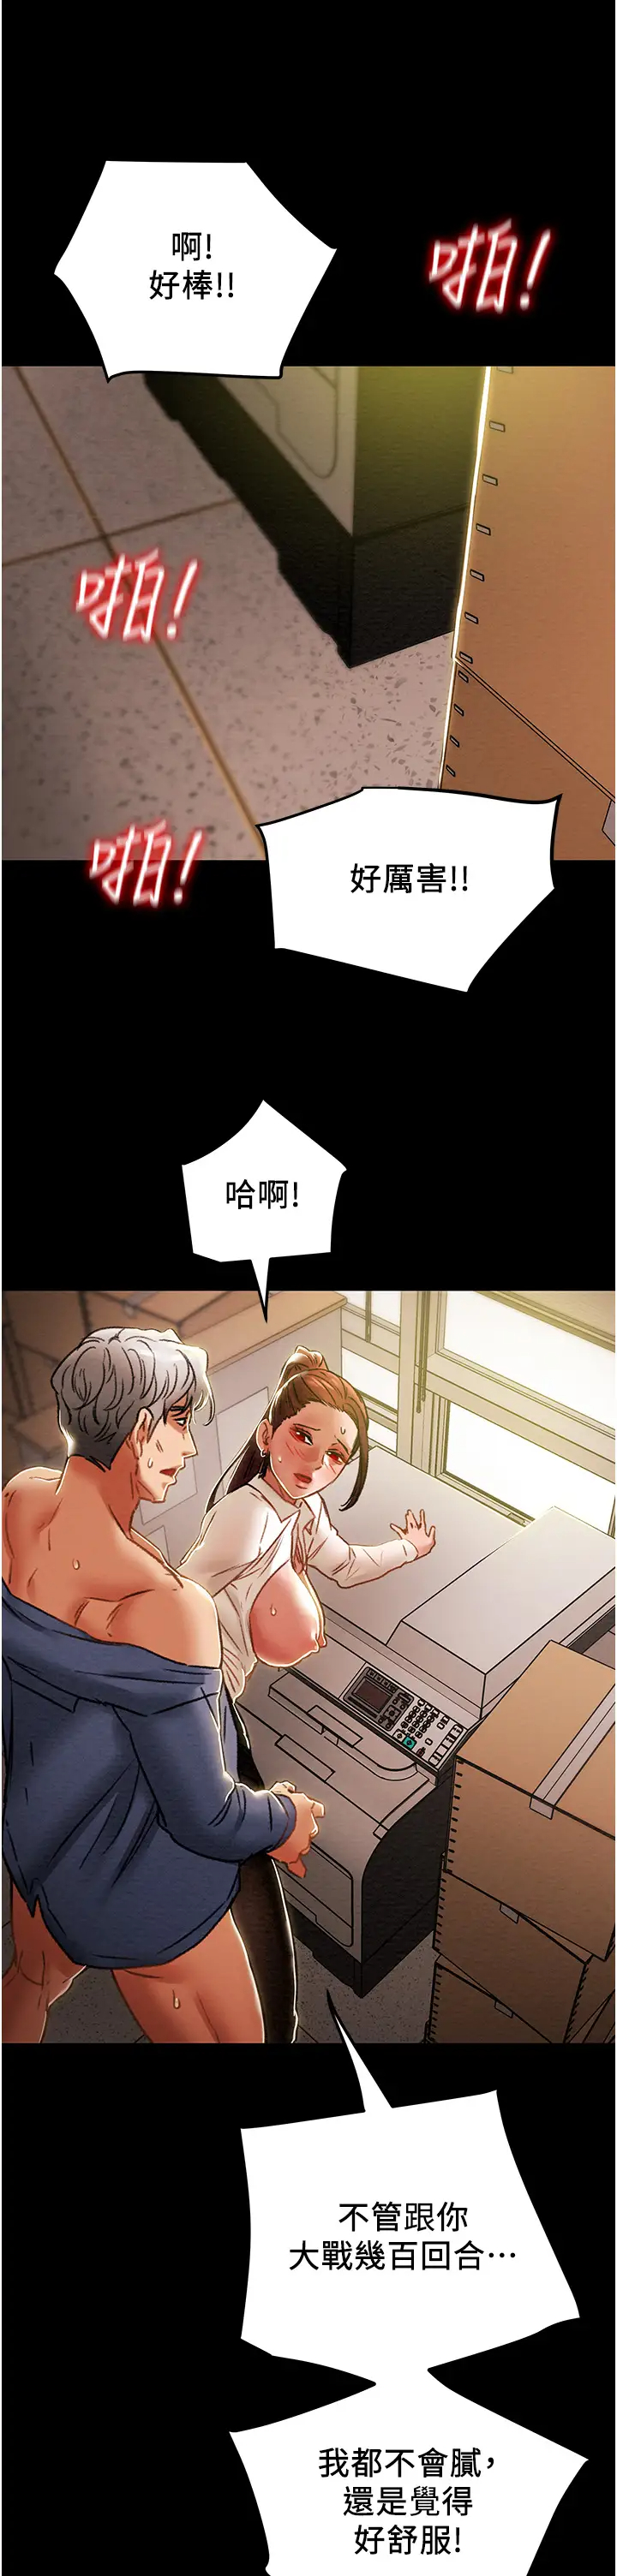 韩国污漫画 純情女攻略計劃 第46话妍霏的过去 28